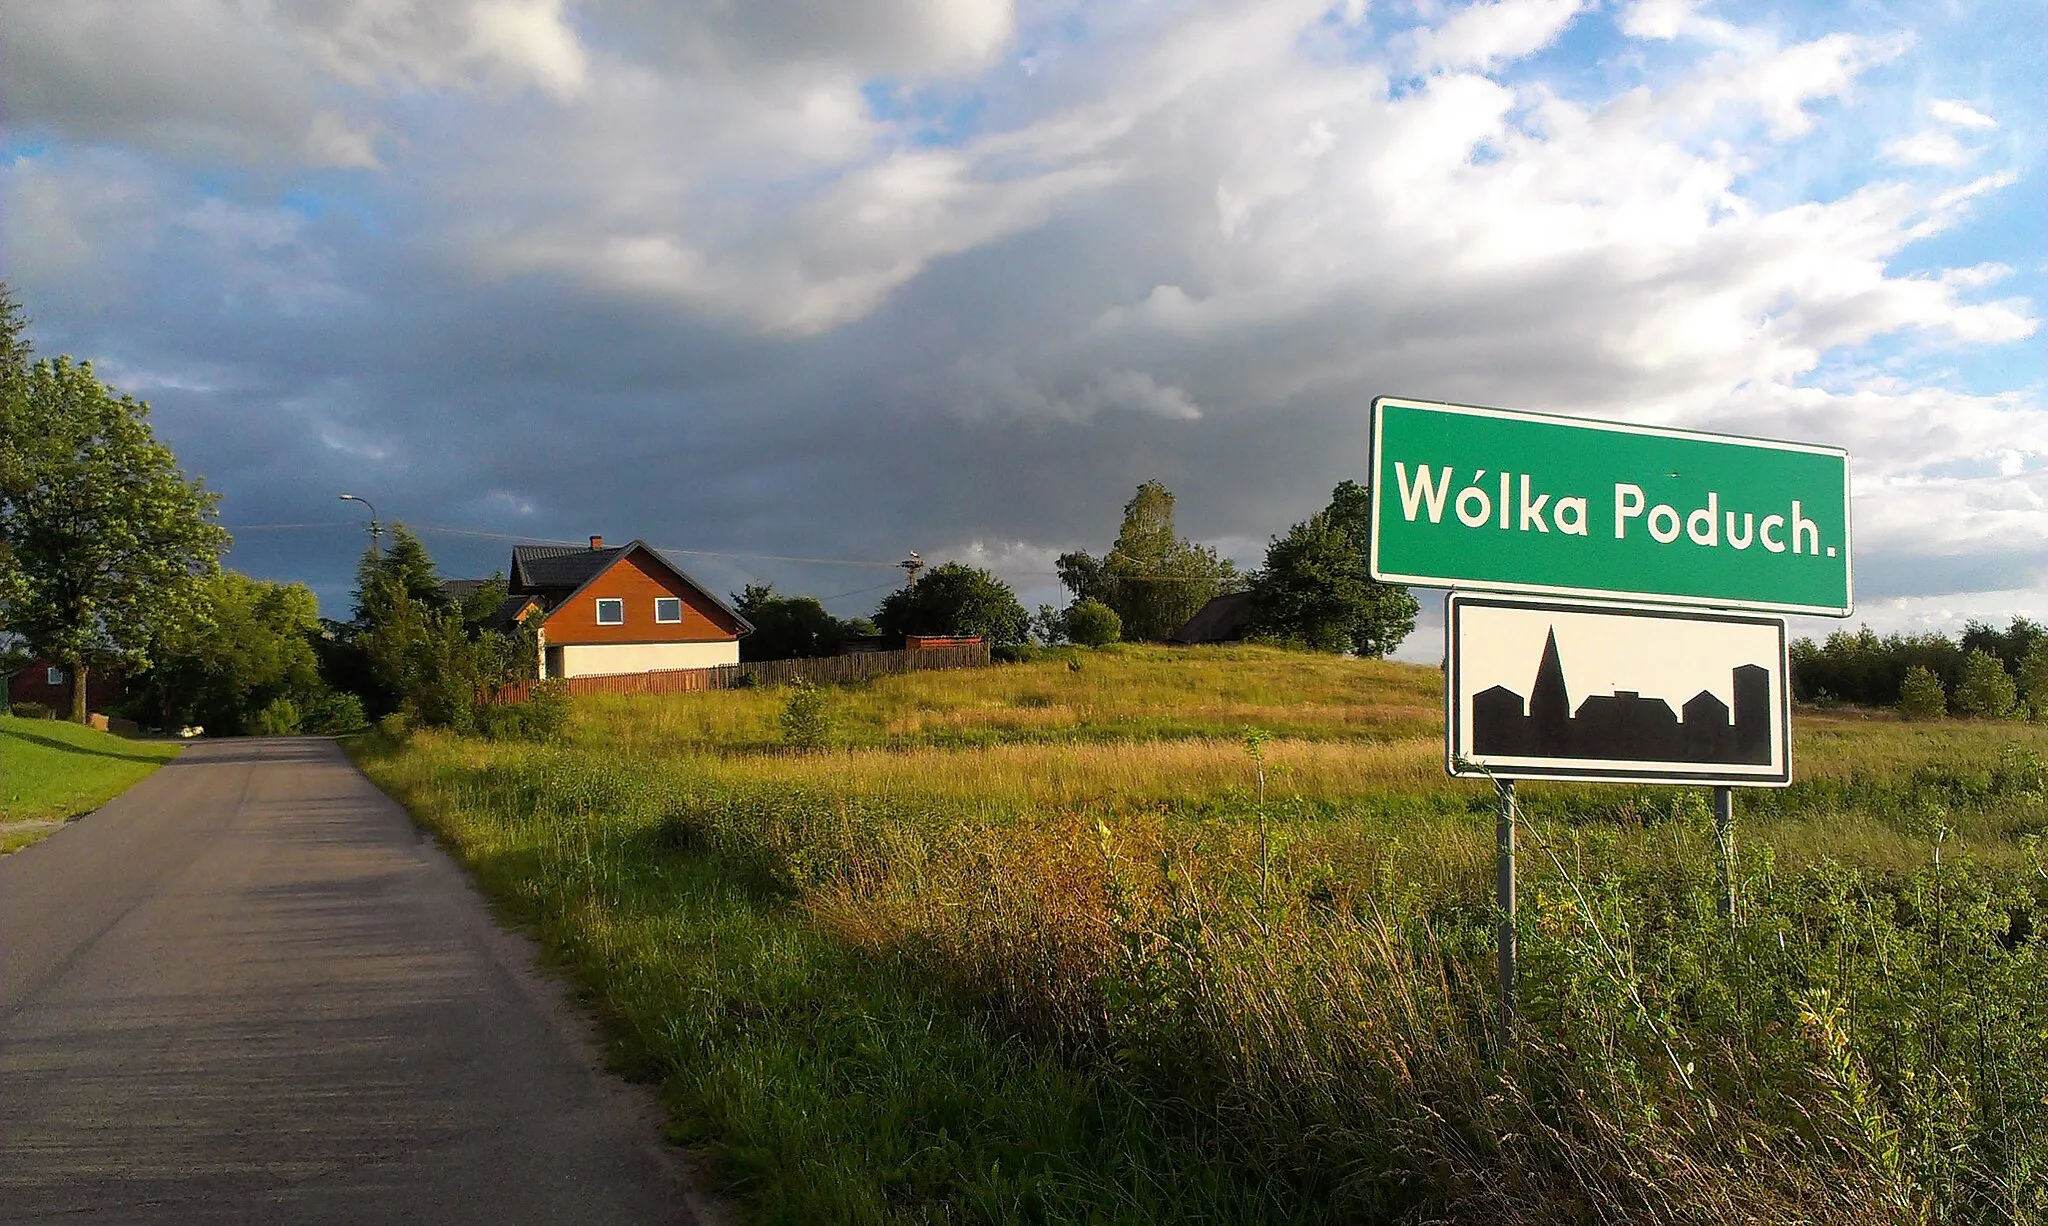 Photo showing: Gniazdo bociana białego znajdujące się we wsi Wólka Poduchowna